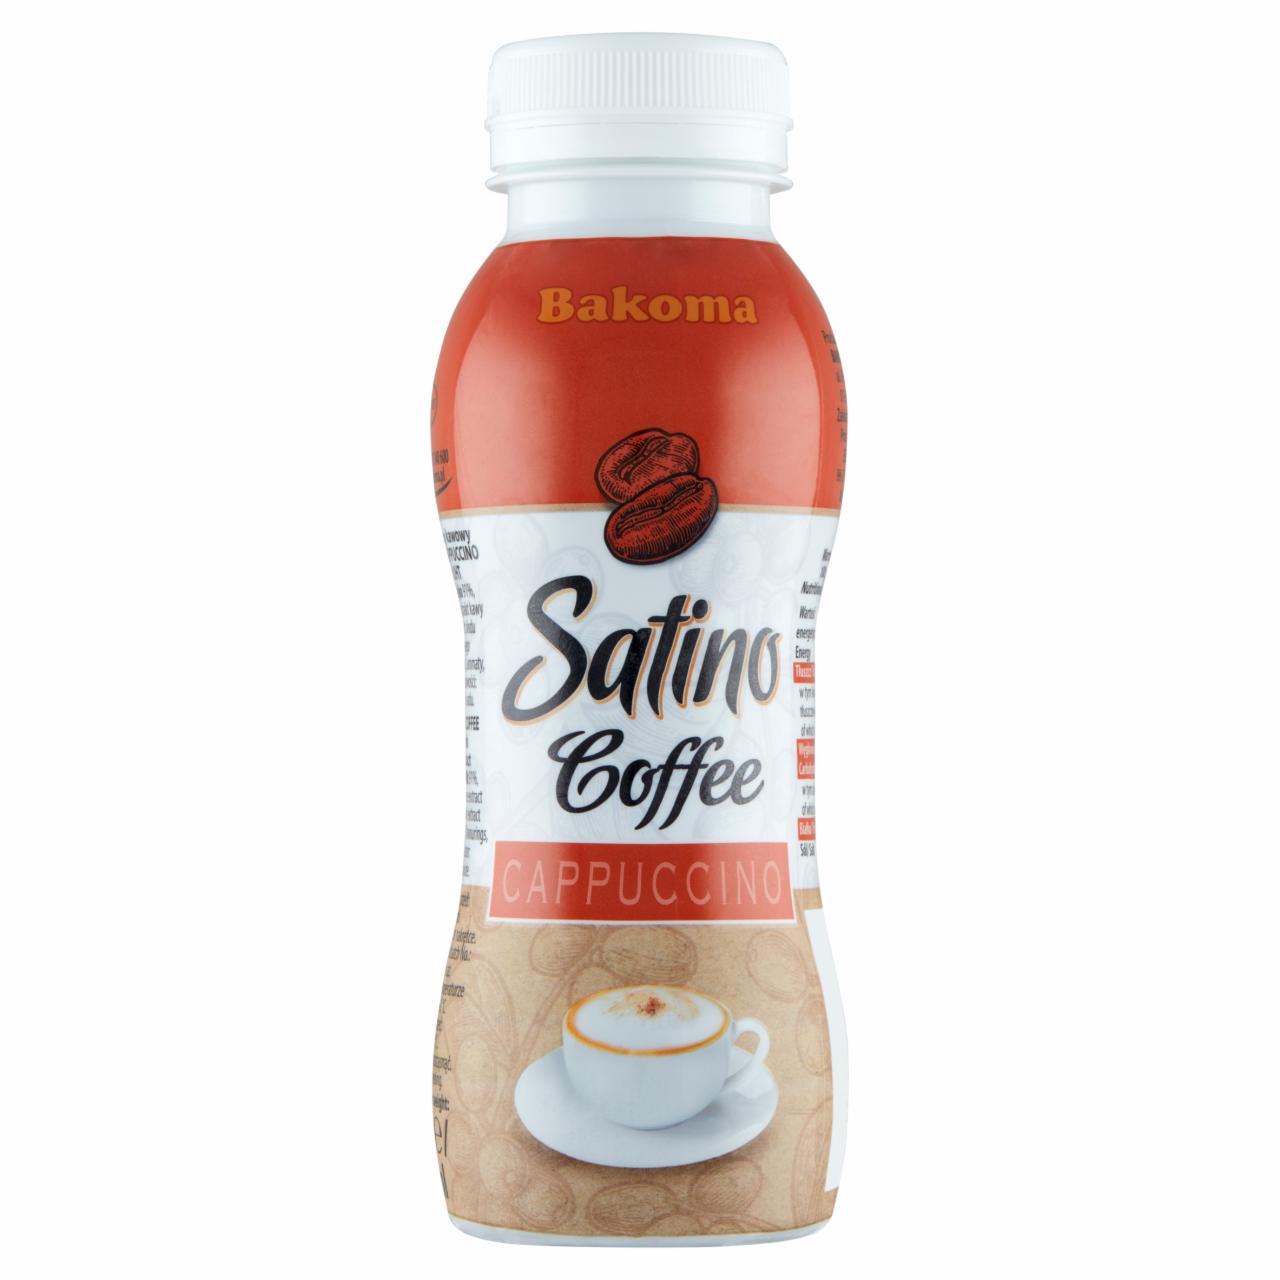 Zdjęcia - Bakoma Satino Cappuccino Napój mleczny kawowy 230 g